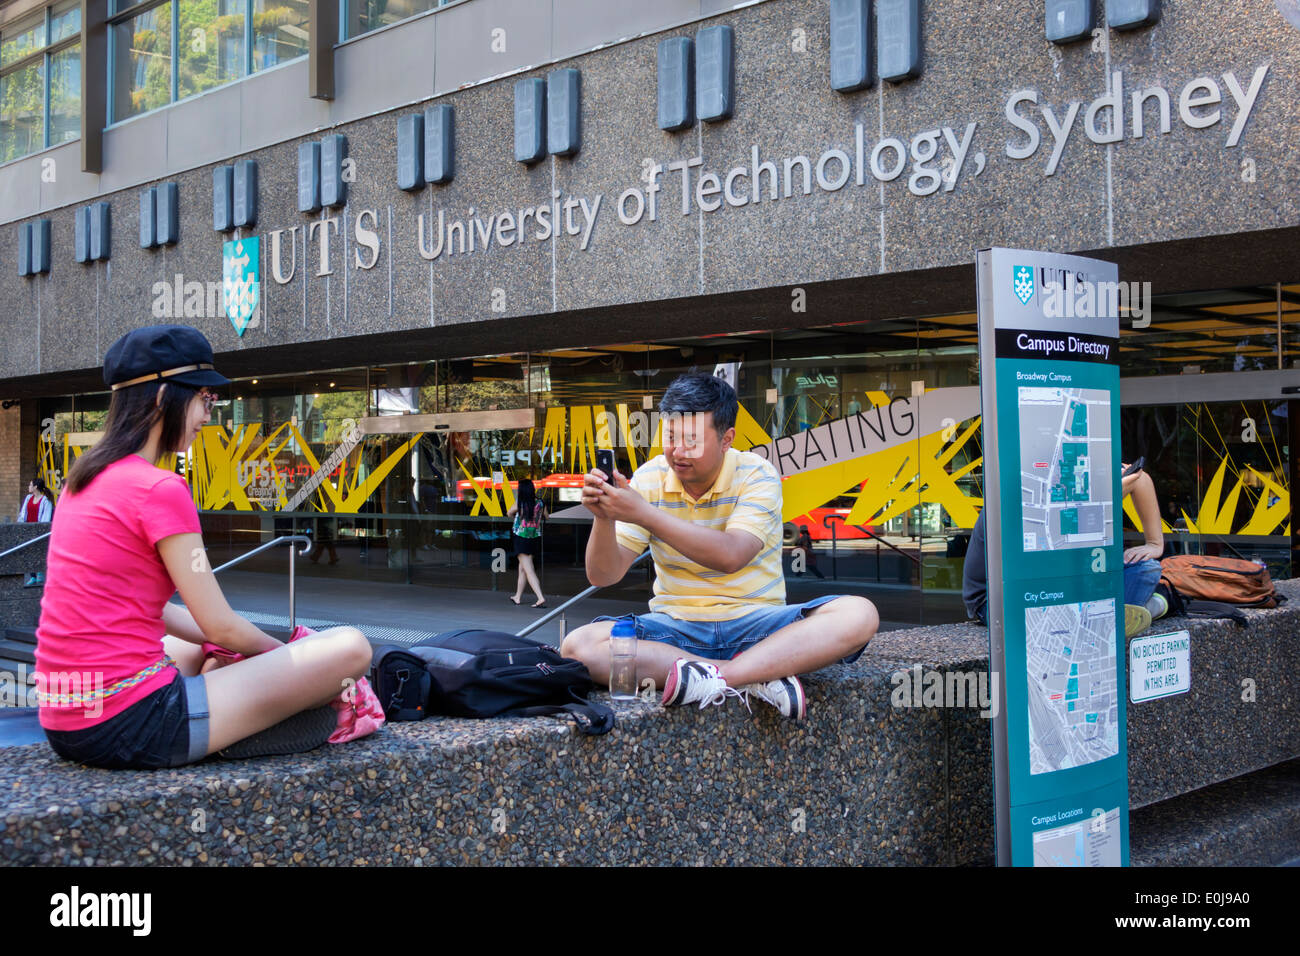 Sydney Australien, UTS, University of Technology Sydney, asiatischer Mann, Männer, die iPhone nehmen, Smartphone-Handys, überprüfen suchen Lesen SMS mir Stockfoto